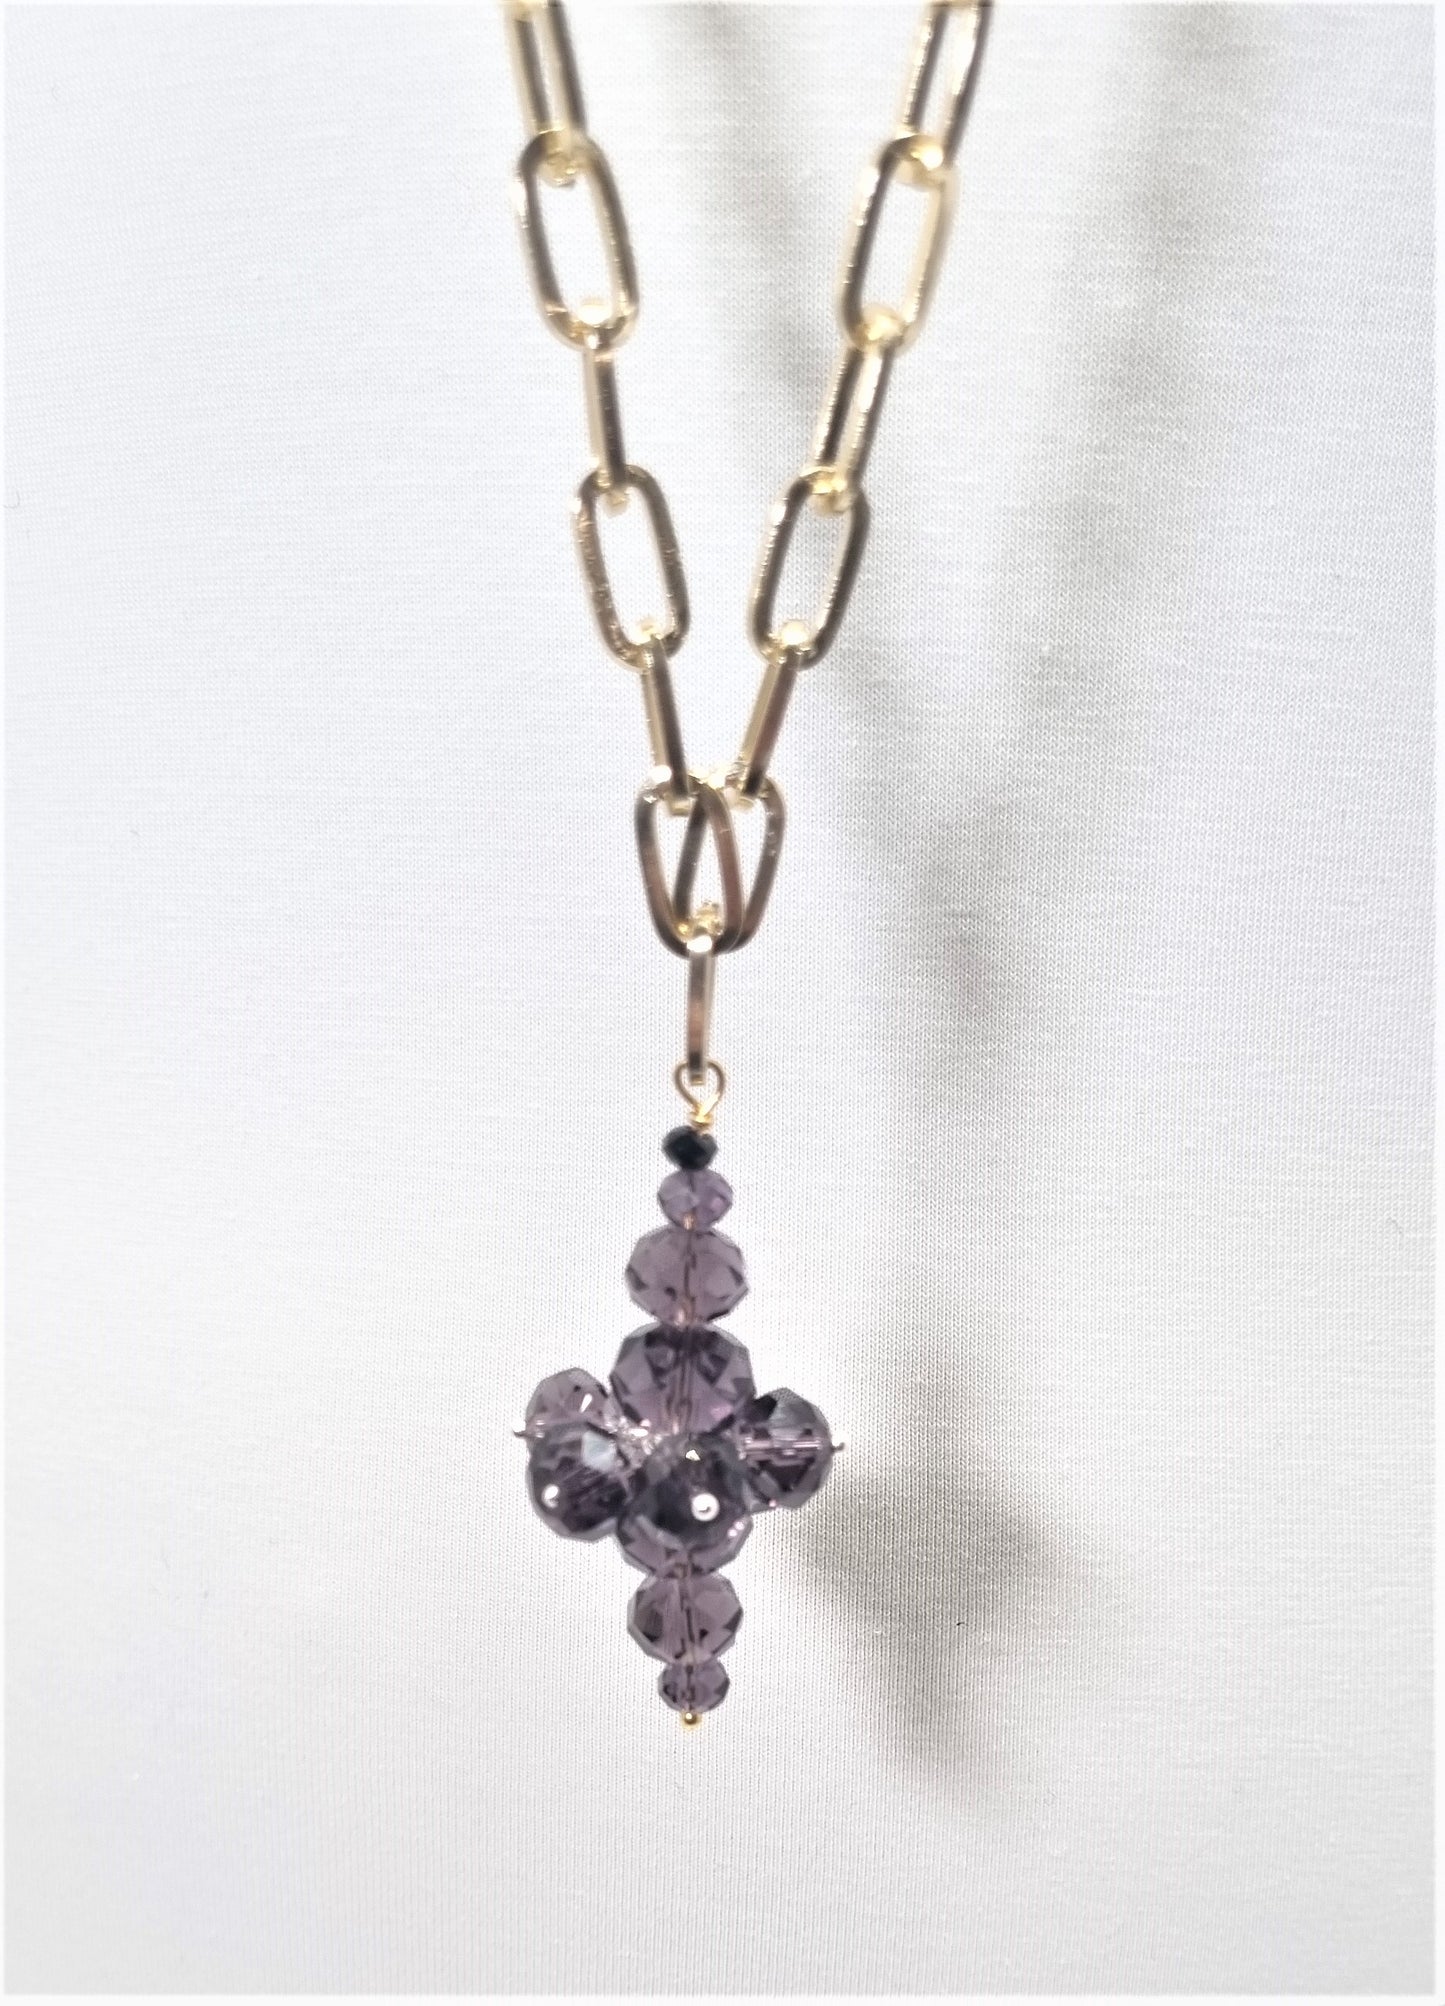 Collana I CRISTALLI .105 una catena metallo dorato ciondolo cristalli viola.